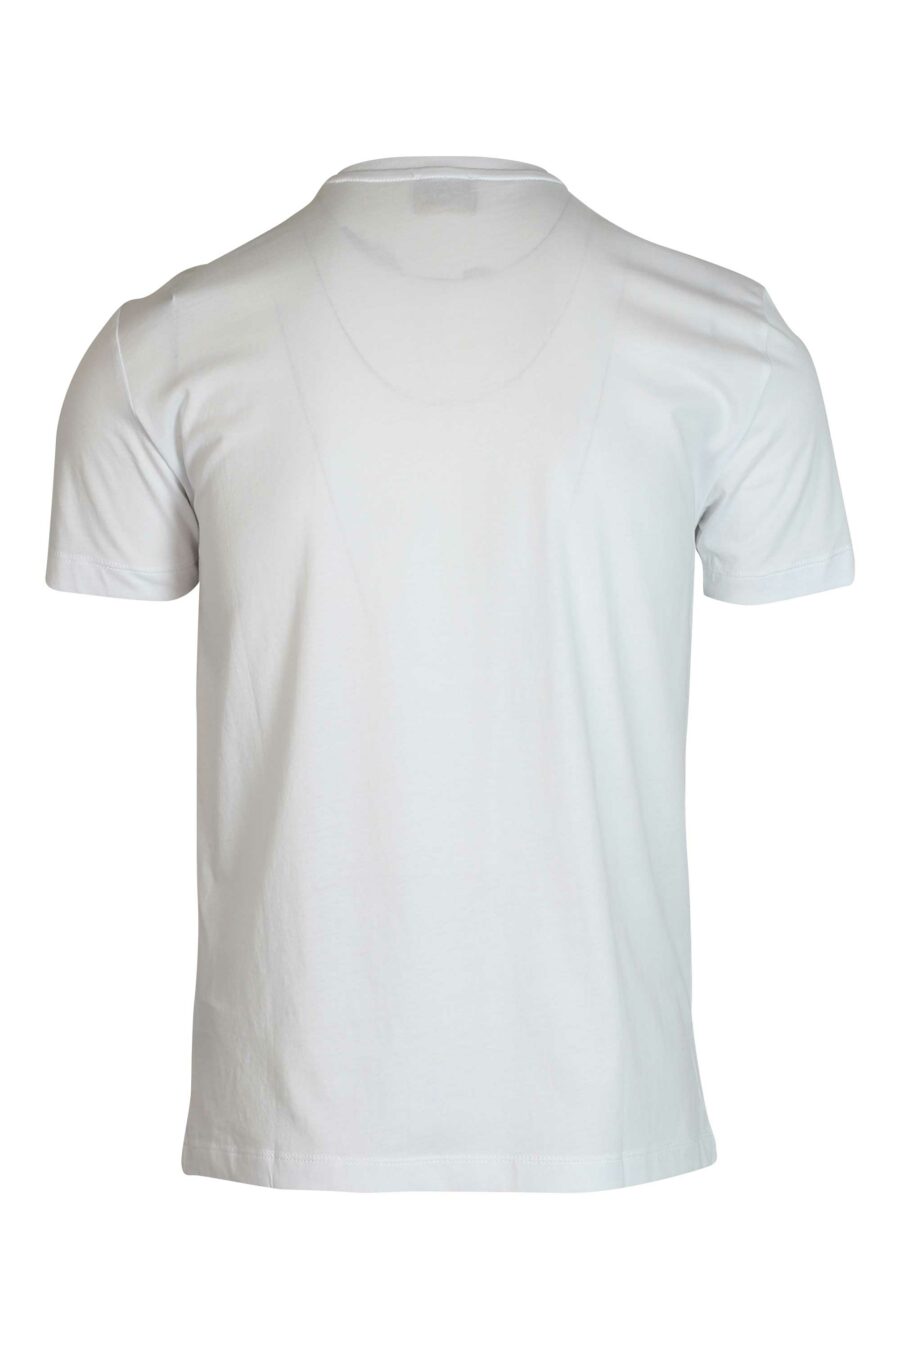 Weißes T-Shirt mit vergoldetem Minilogo - 8056787132948 2